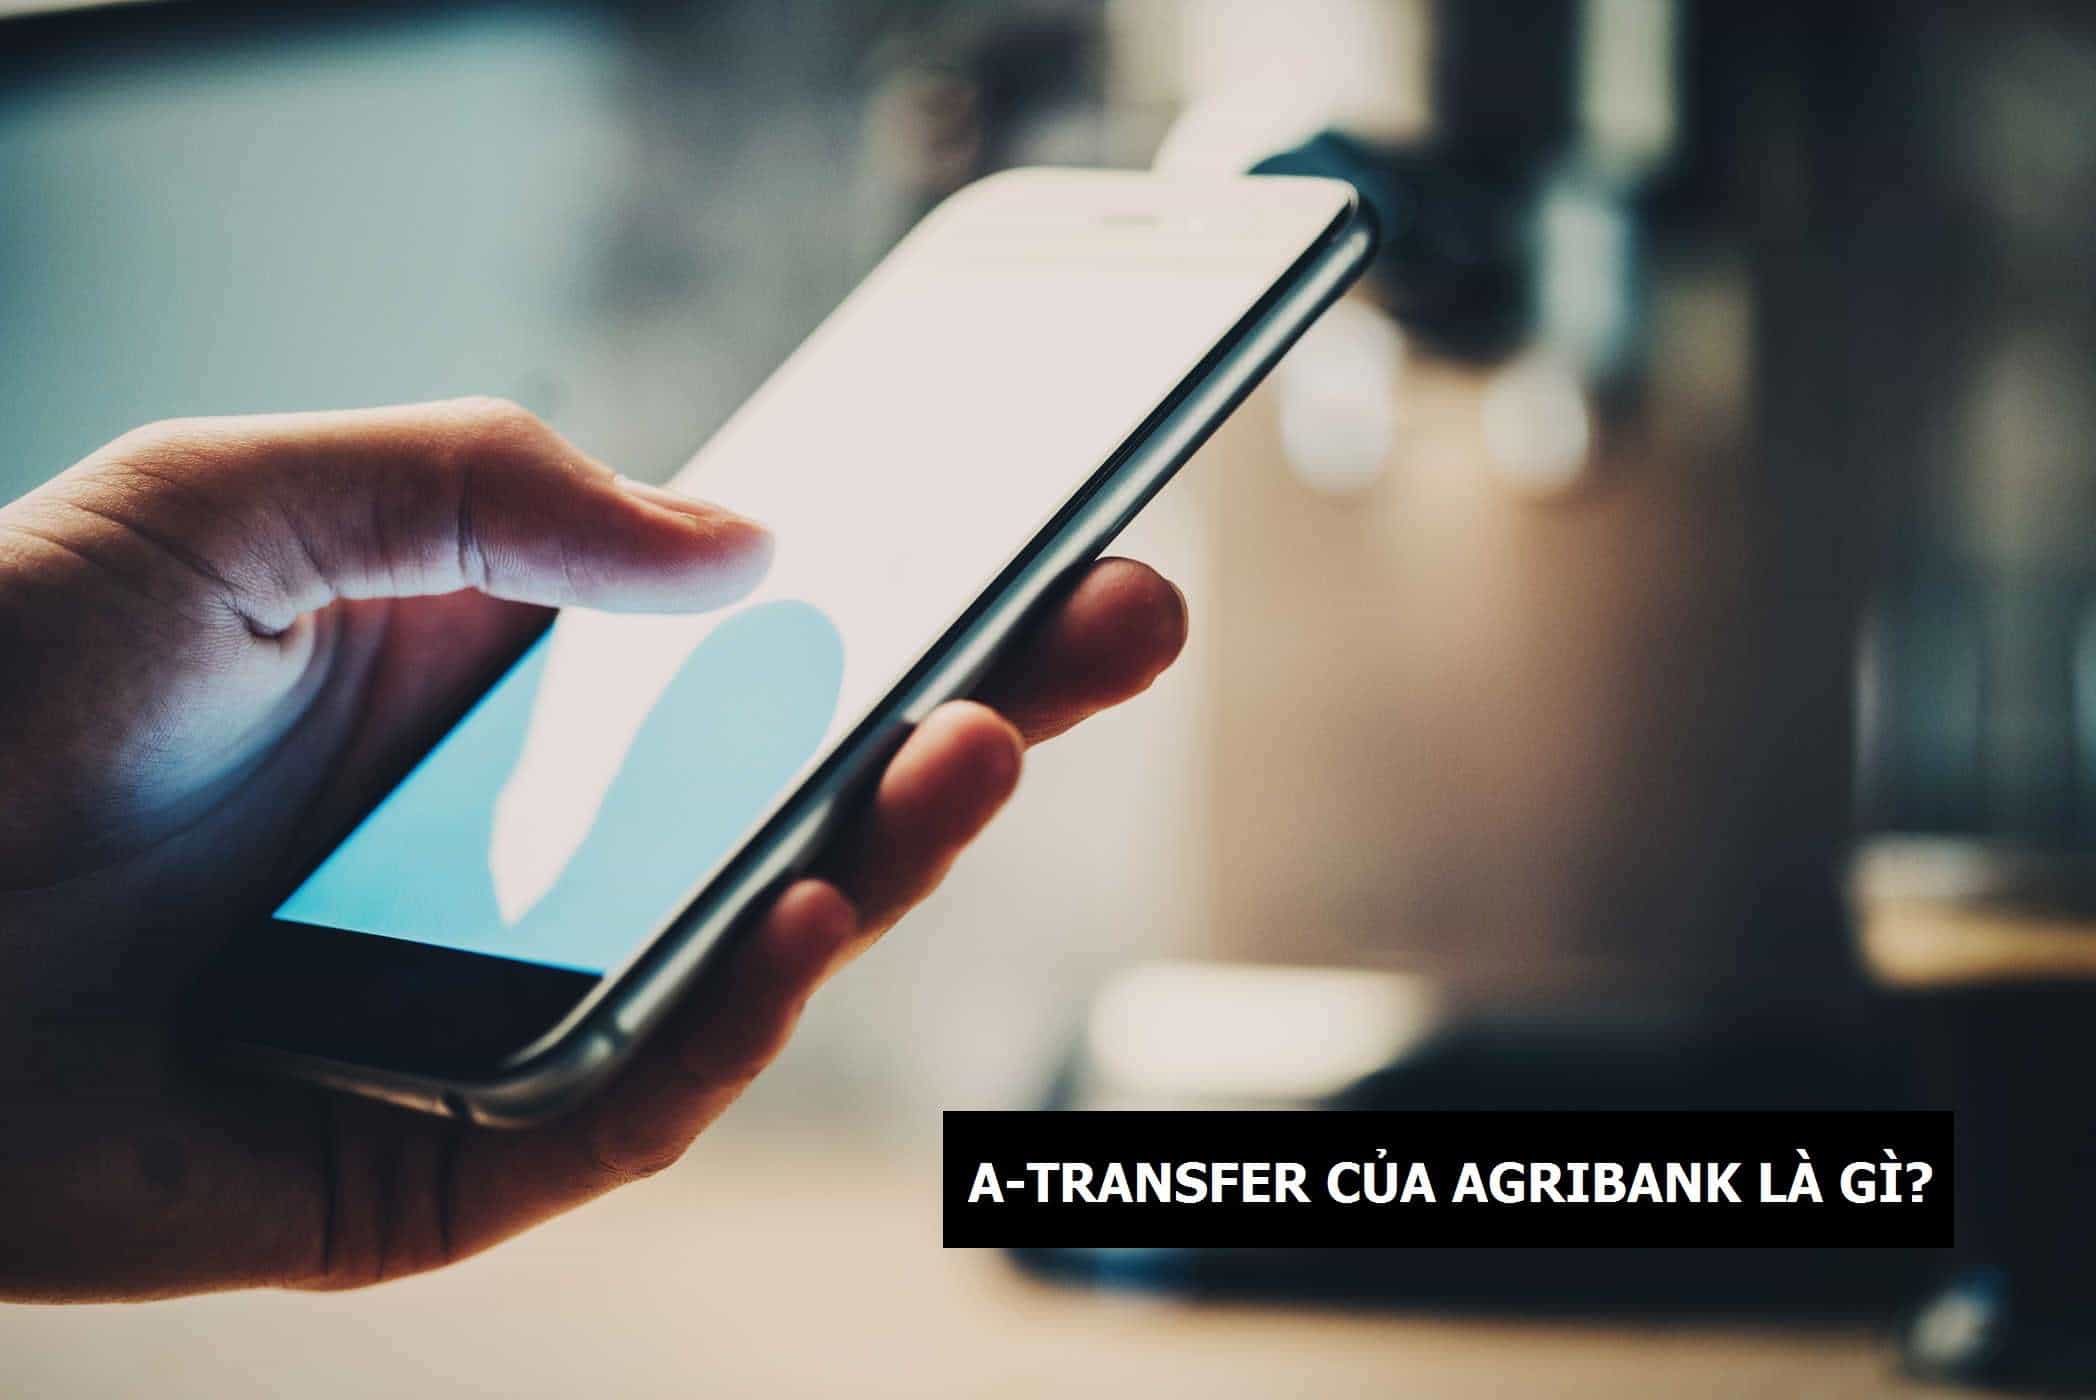 Dịch vụ A Transfer của Agribank là gì?